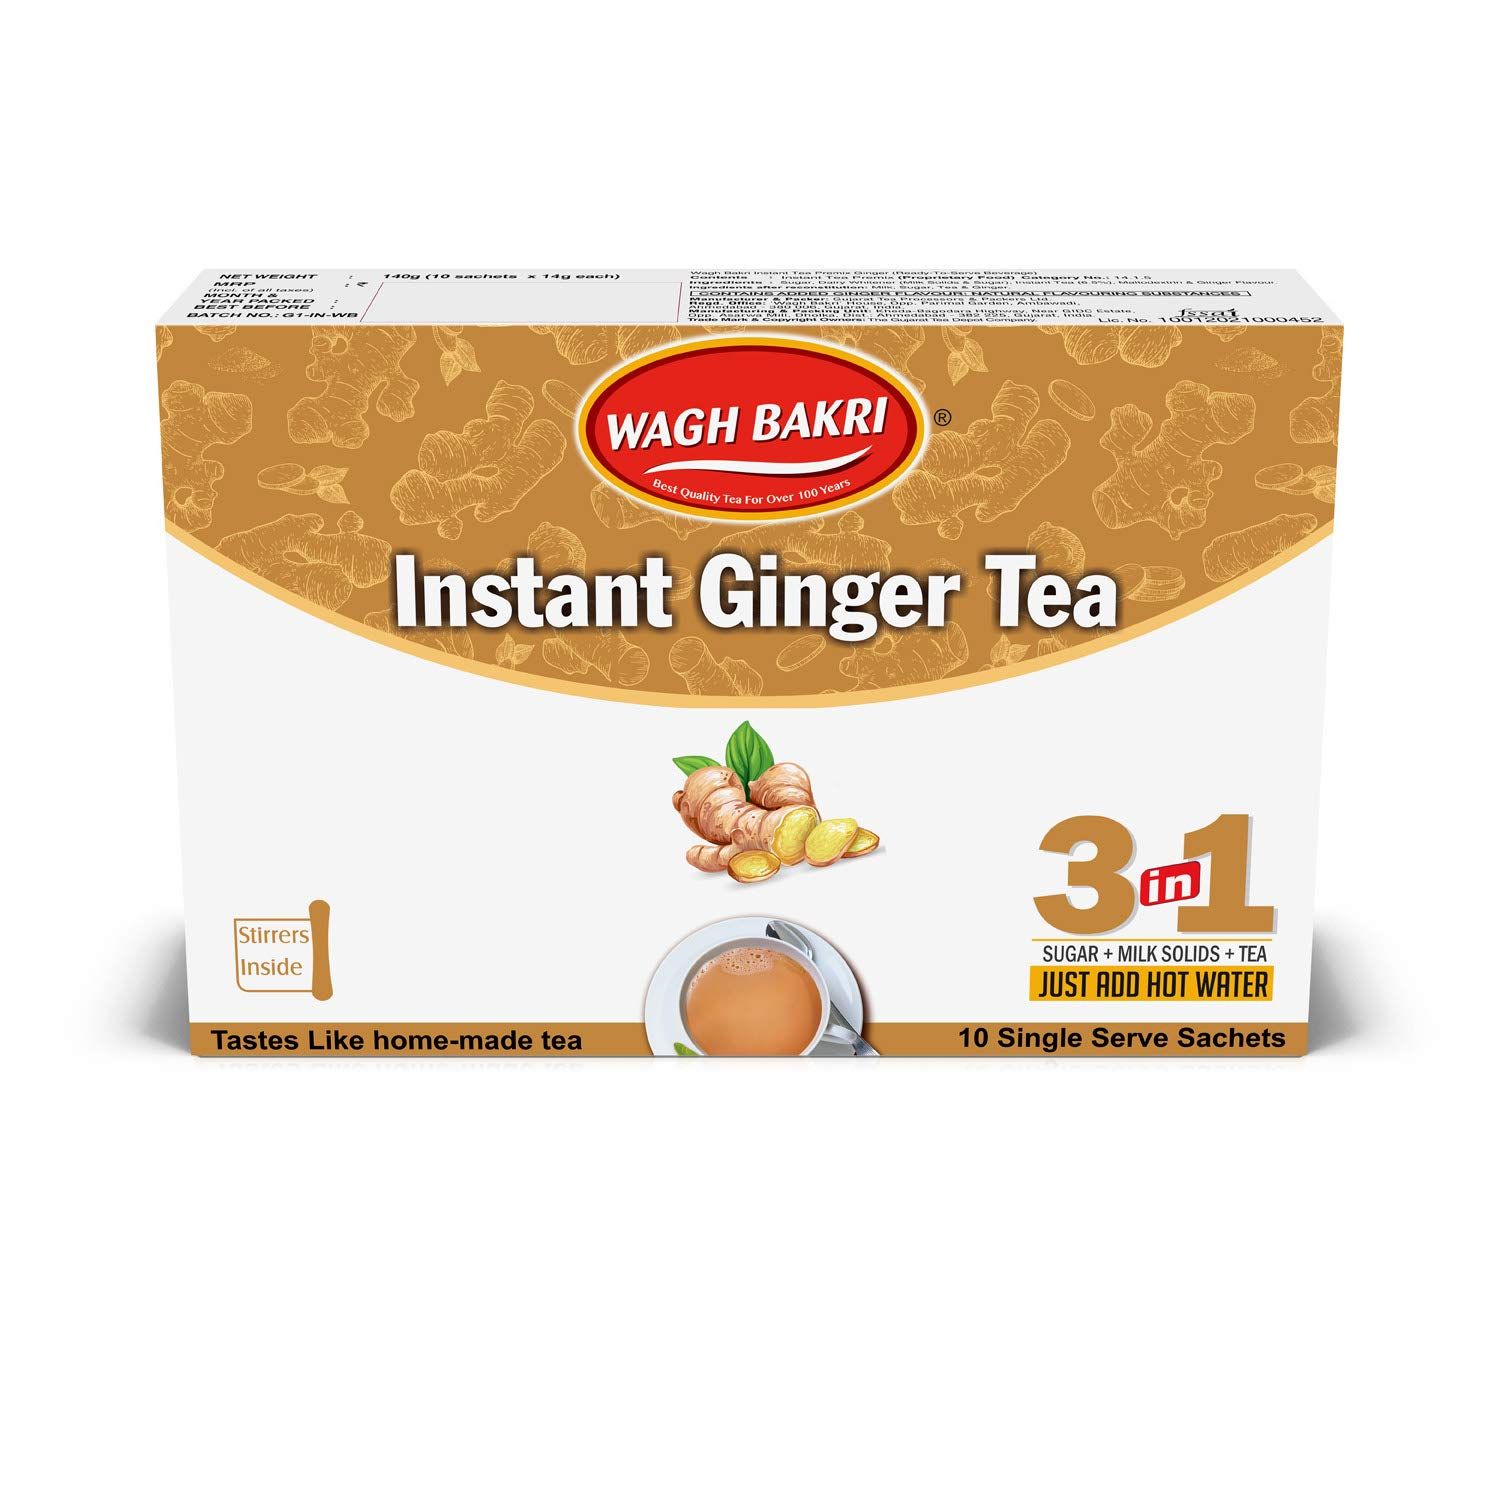 Wagh Bakri Instant Ginger Tea Image